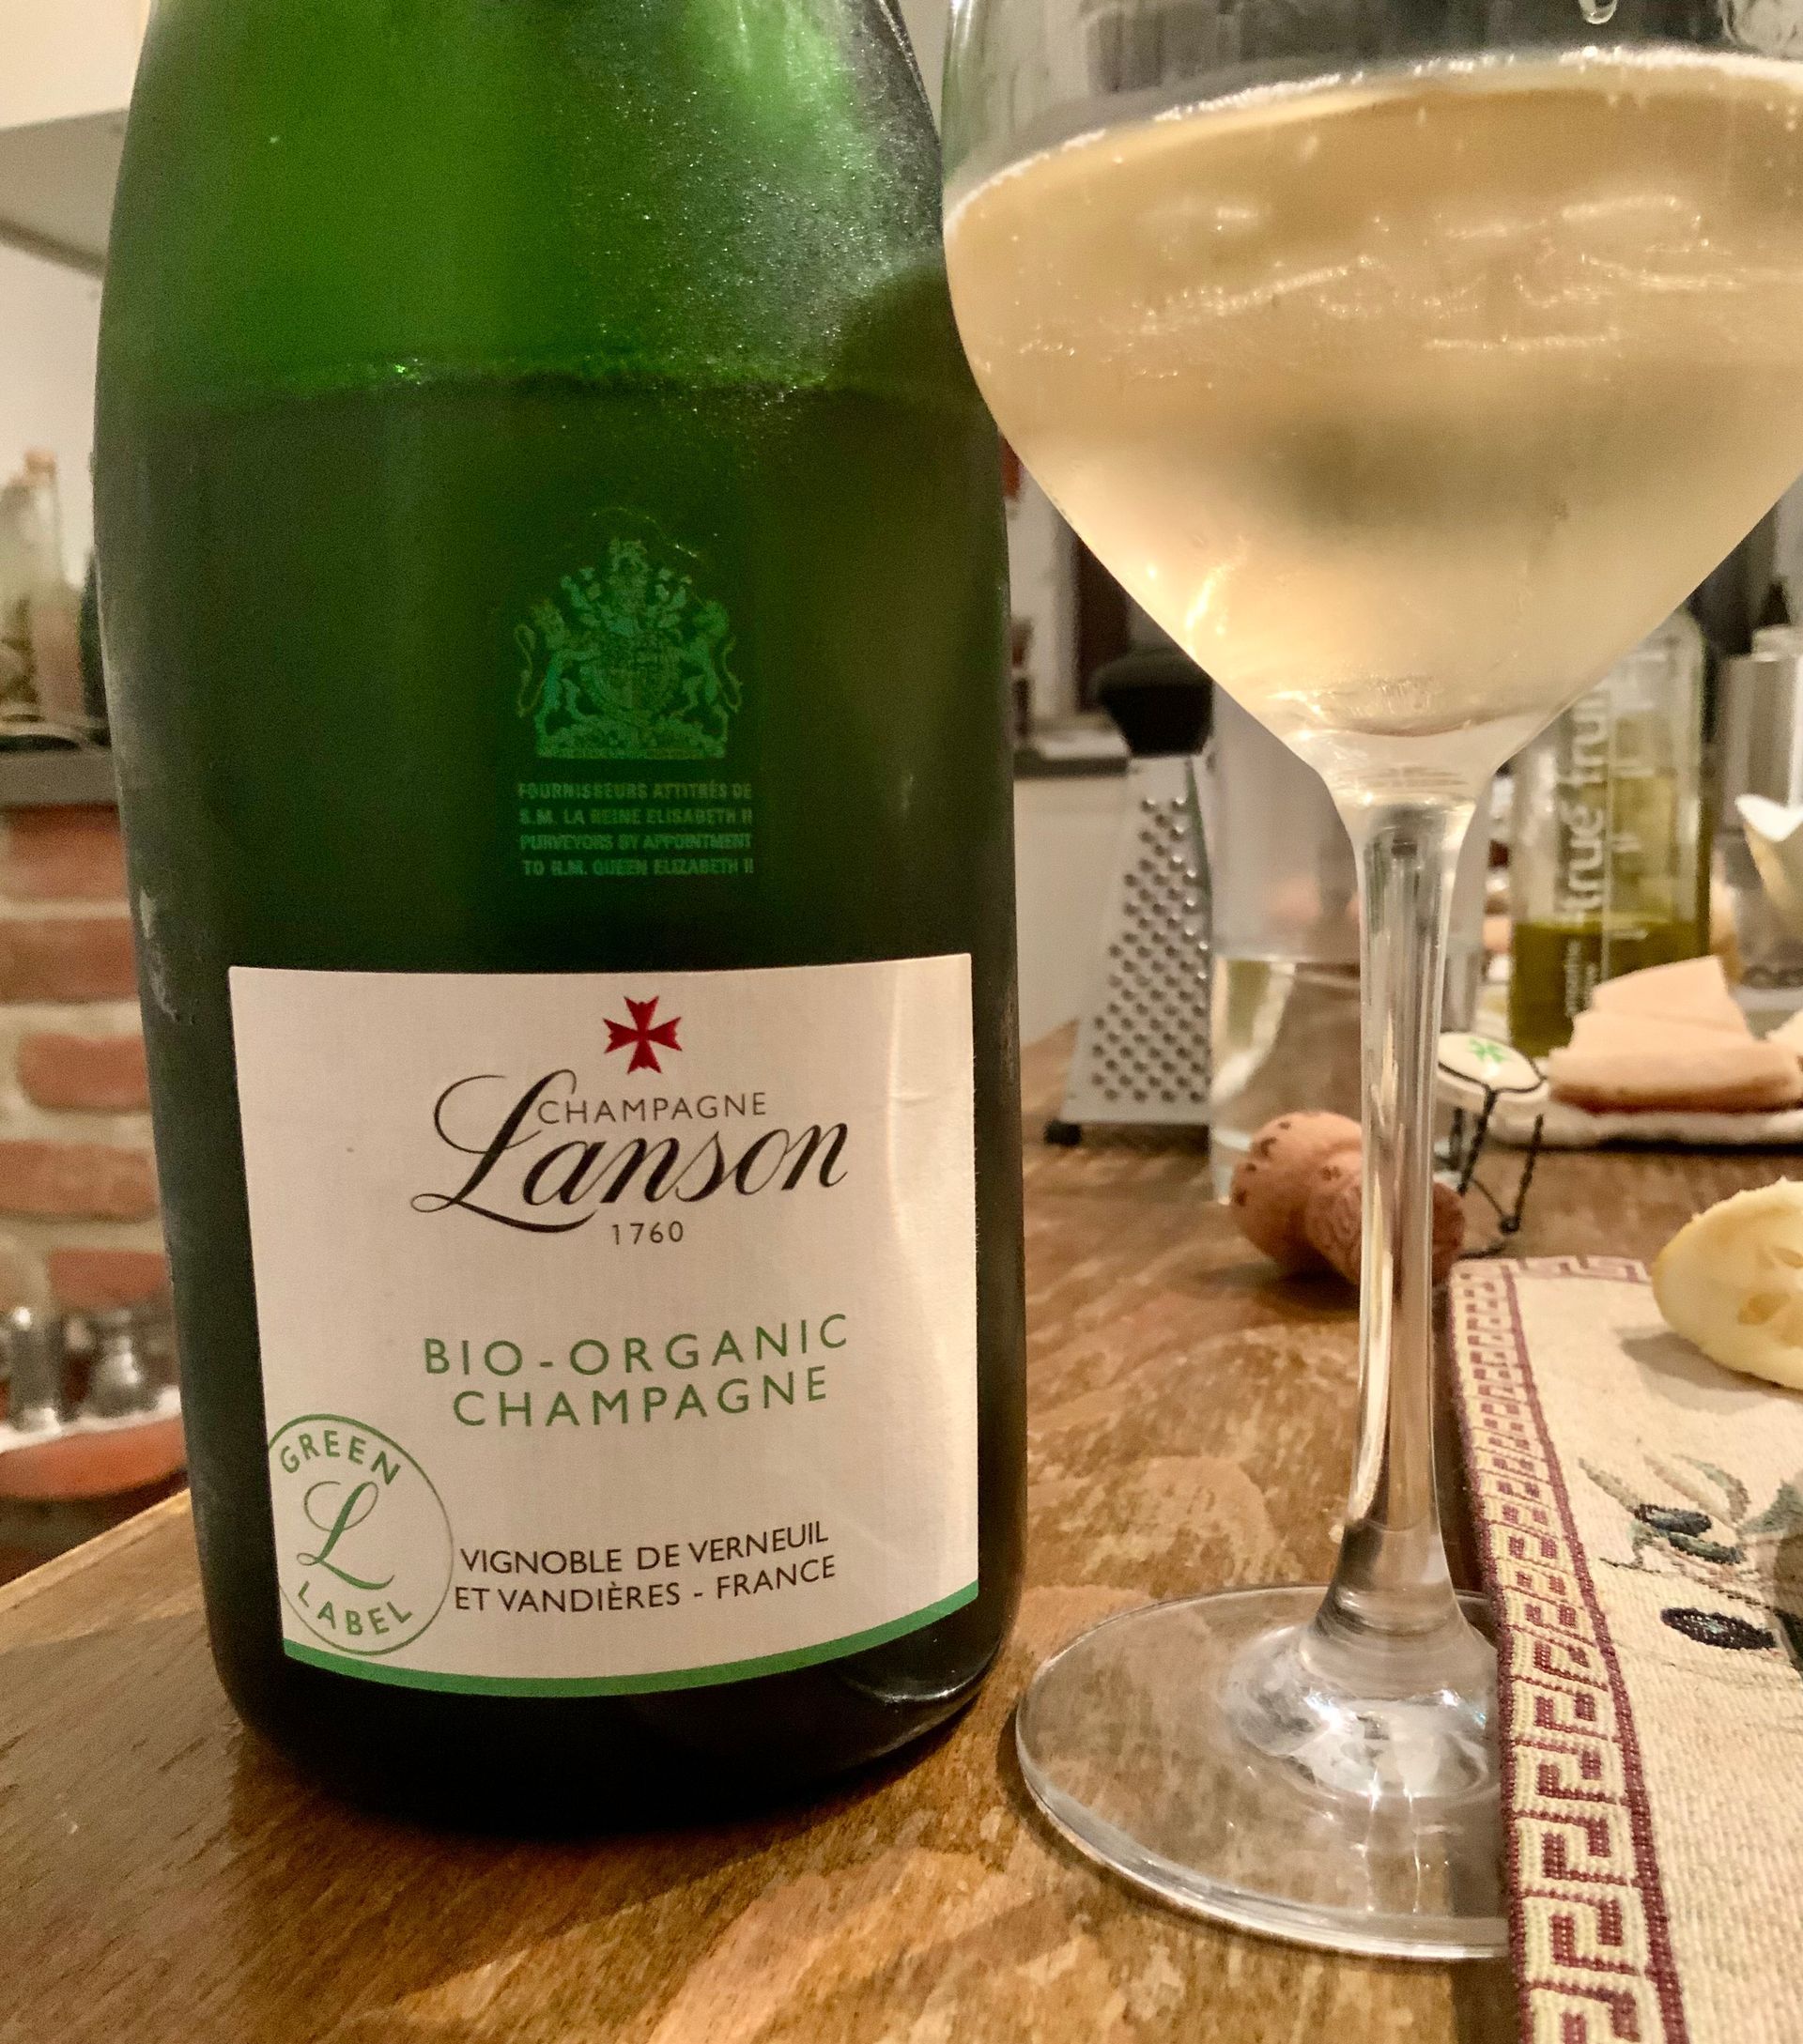 Champagne Lanson Le Green Bio-Organic